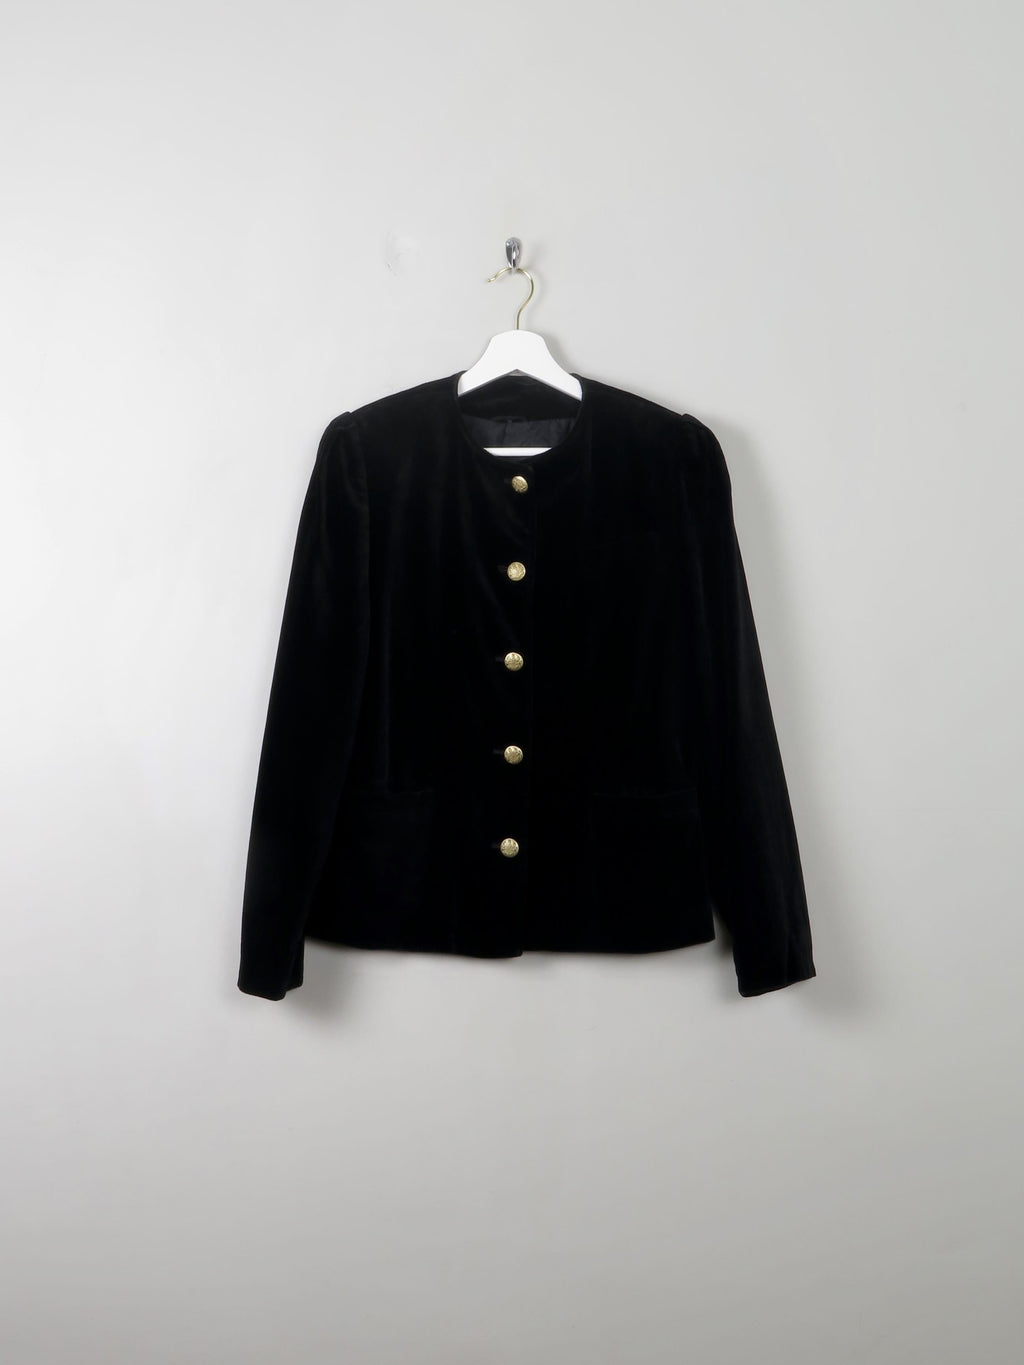 Women's Vintage Black Velvet Jacket S - The Harlequin